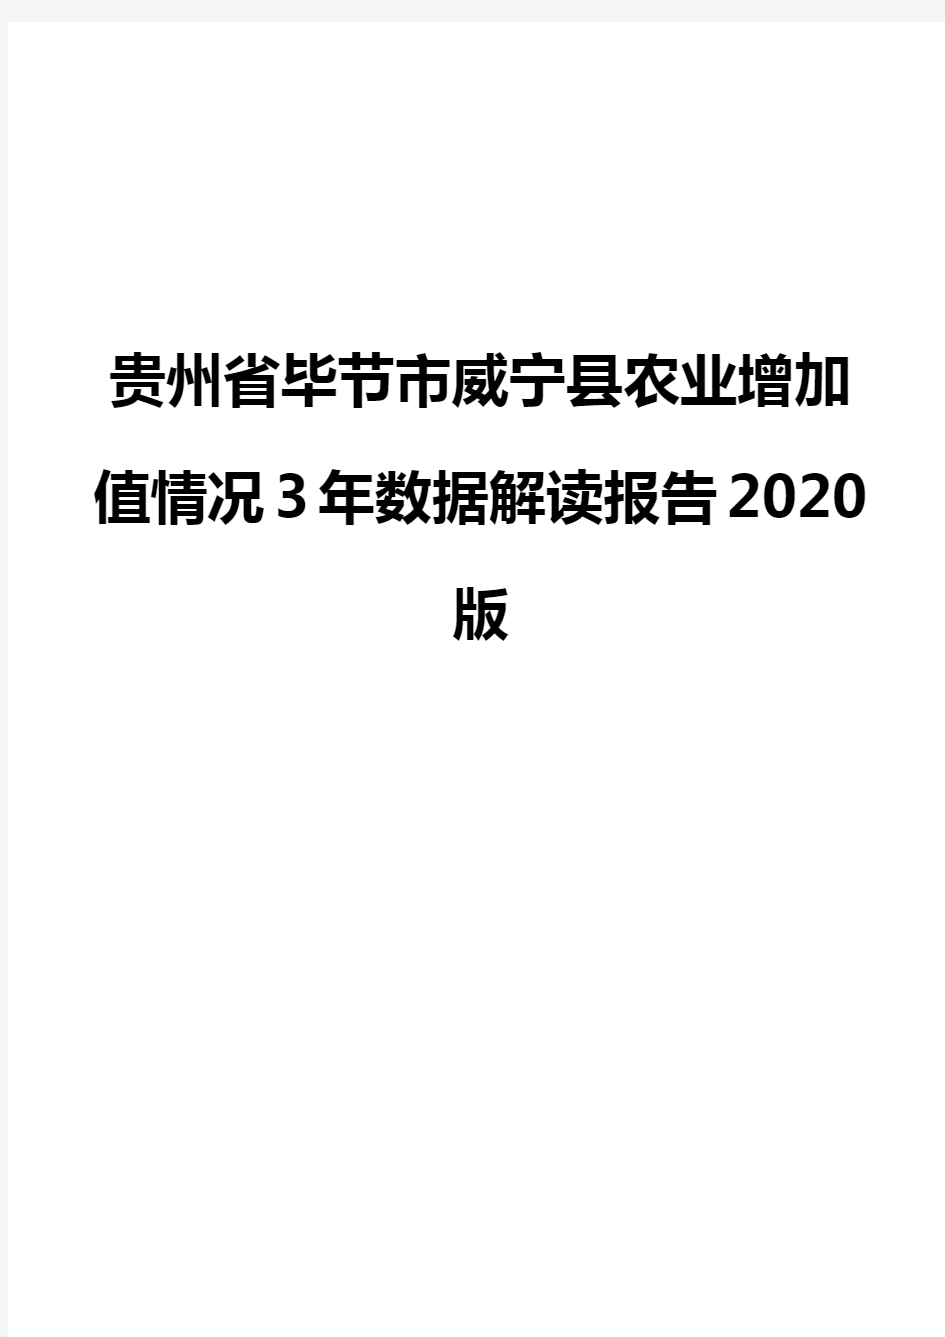 贵州省毕节市威宁县农业增加值情况3年数据解读报告2020版